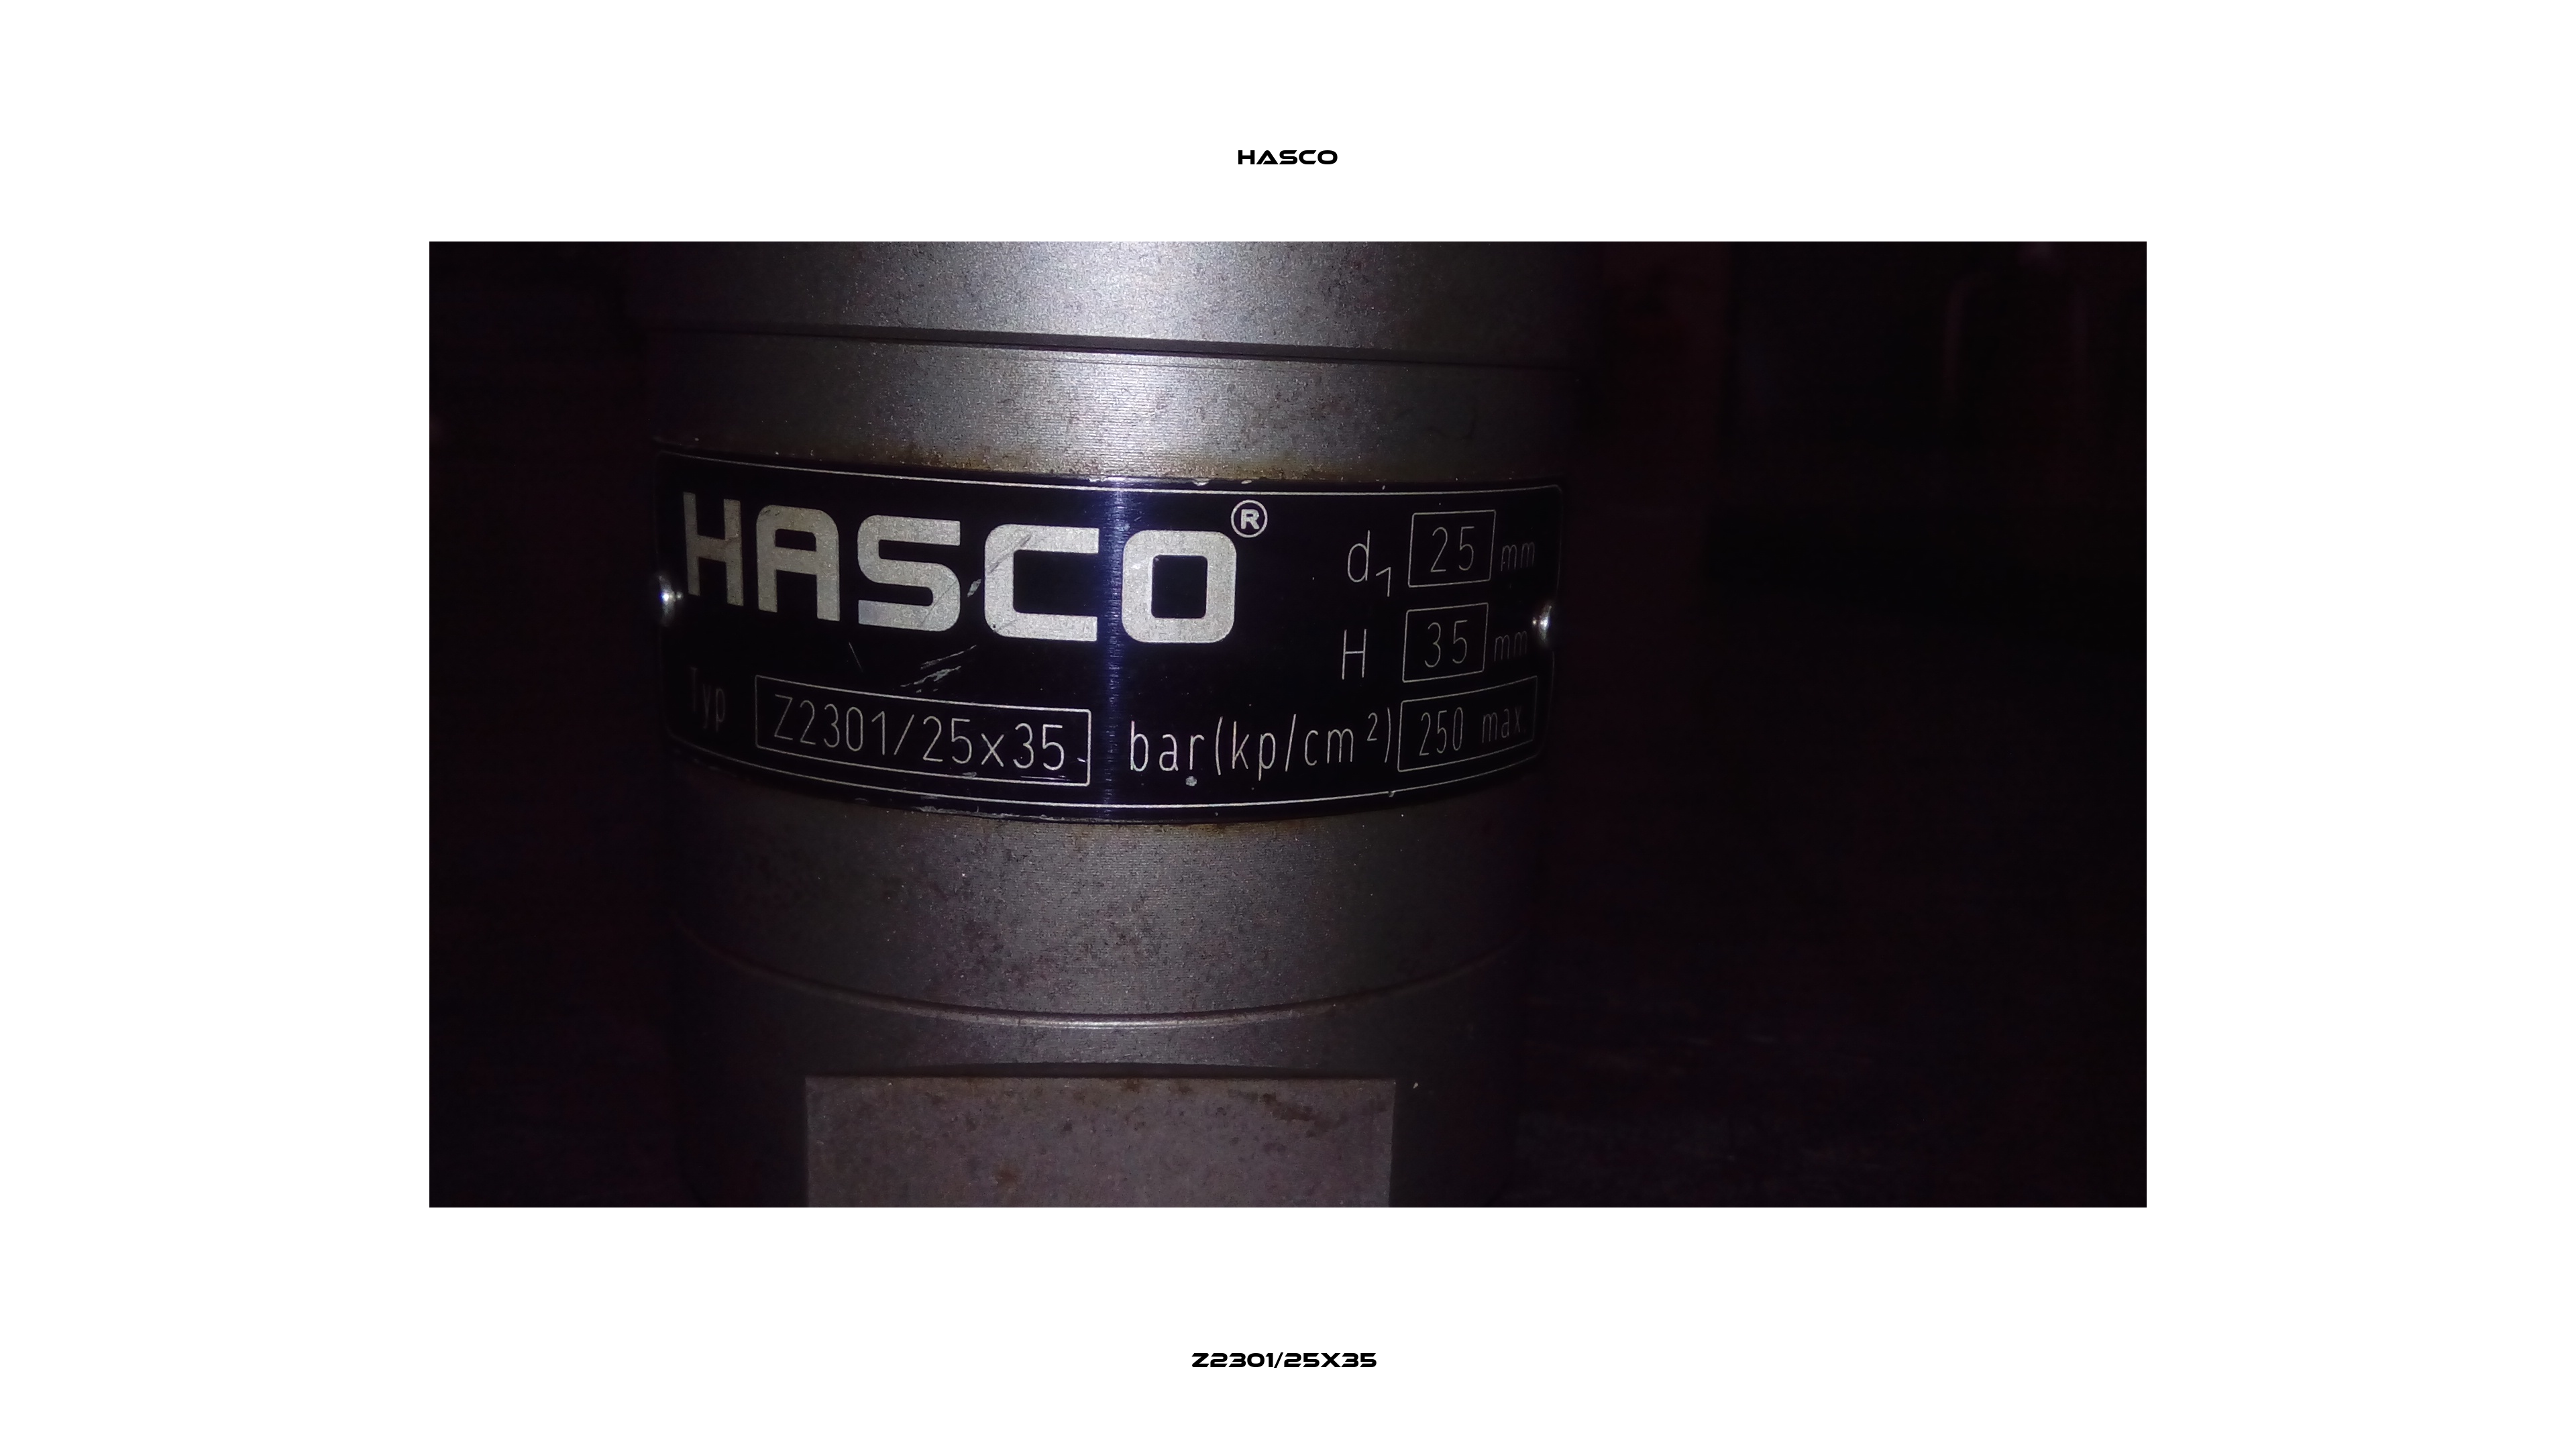 Z2301/25x35  Hasco